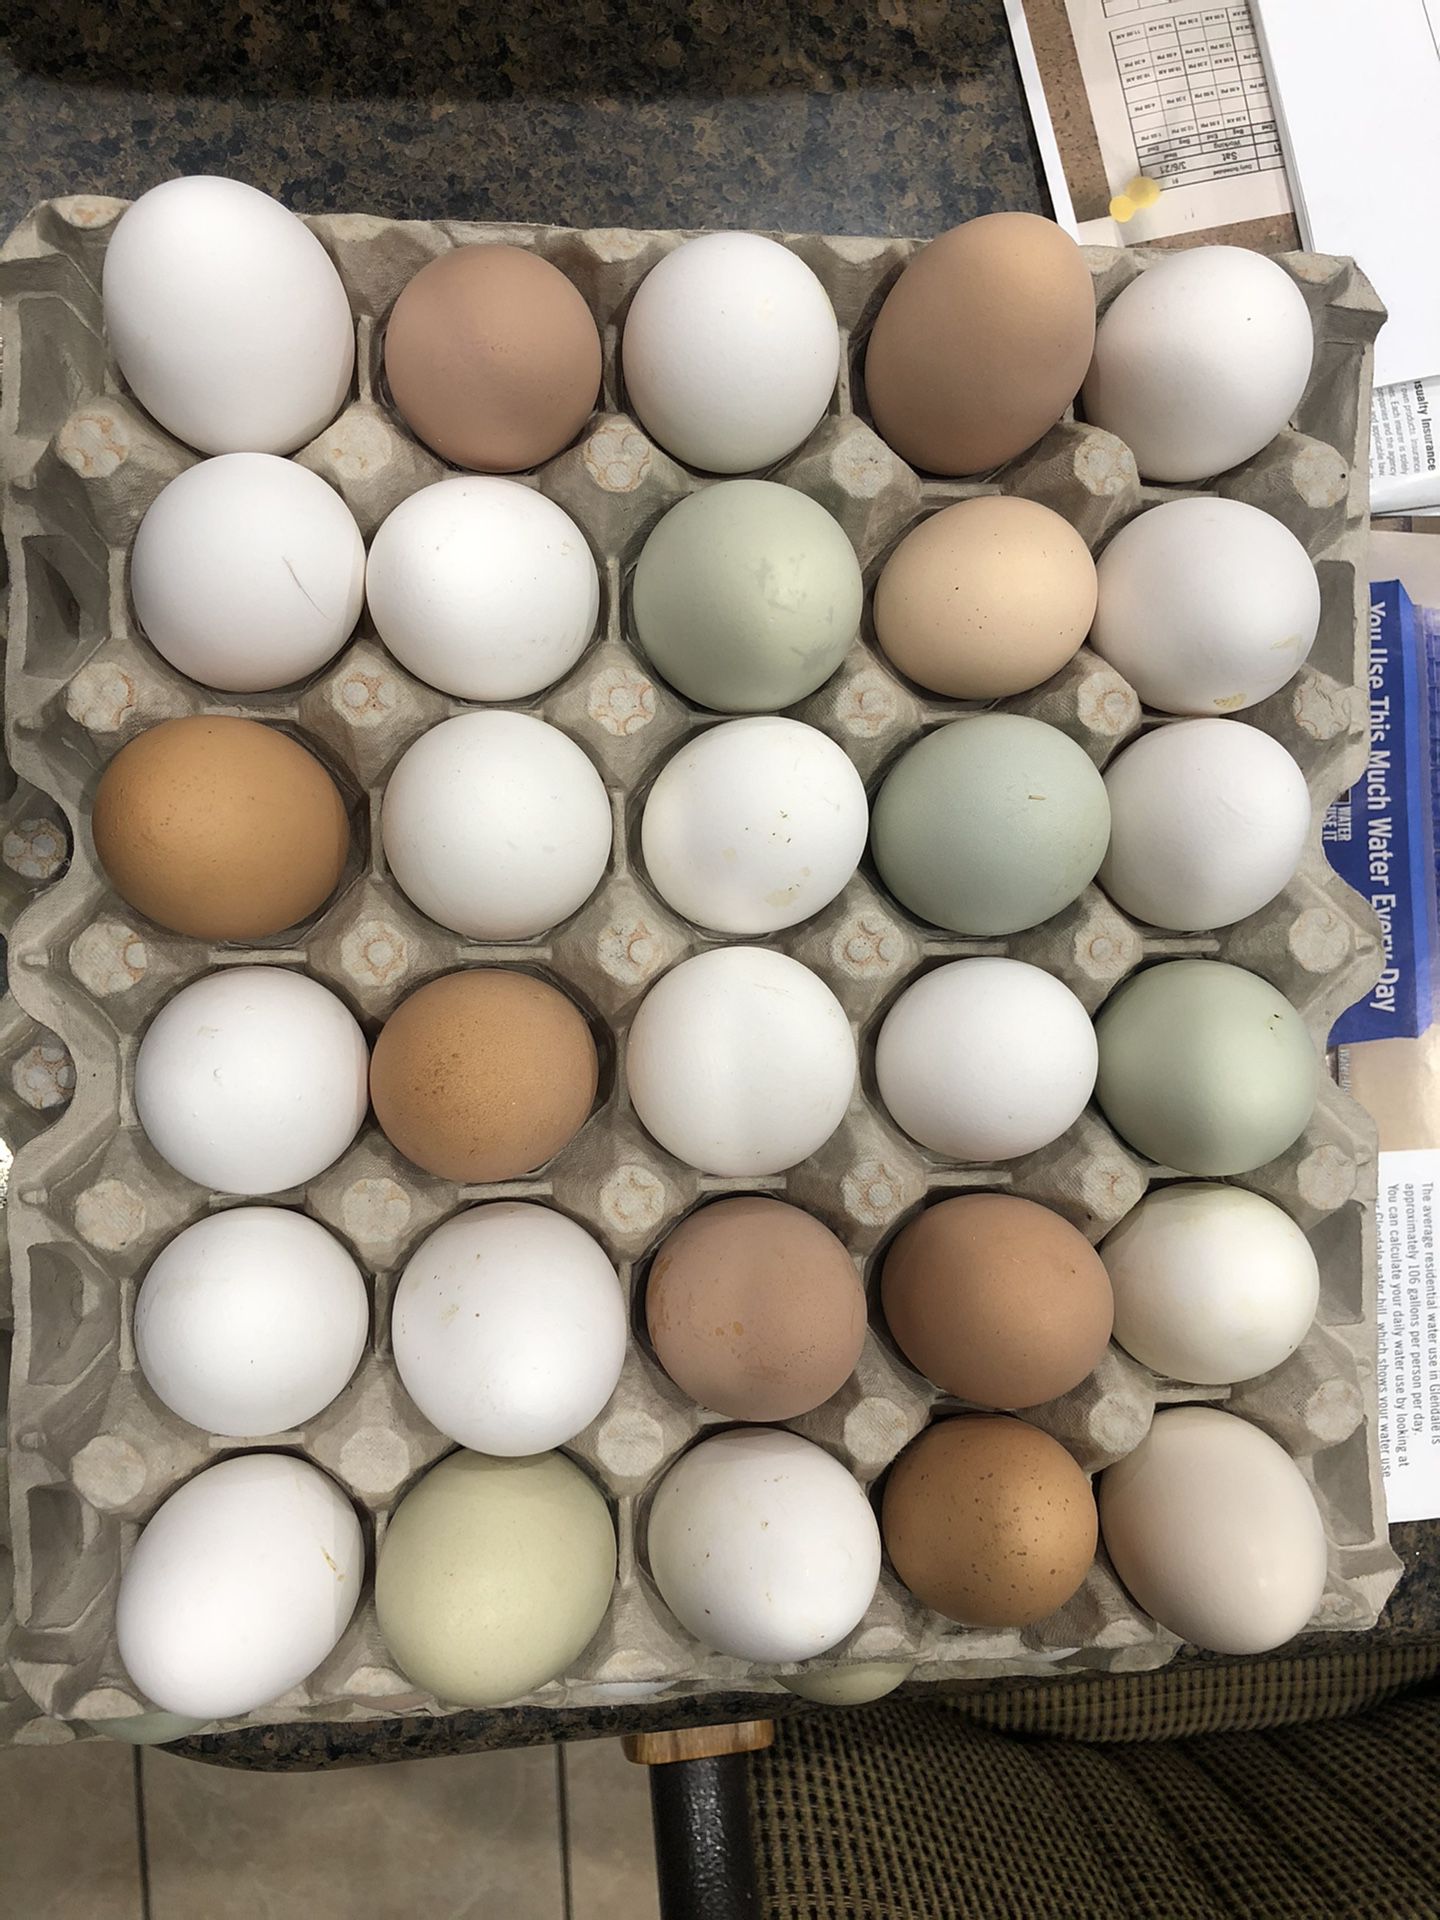 Fresh eggs $4 a dozen